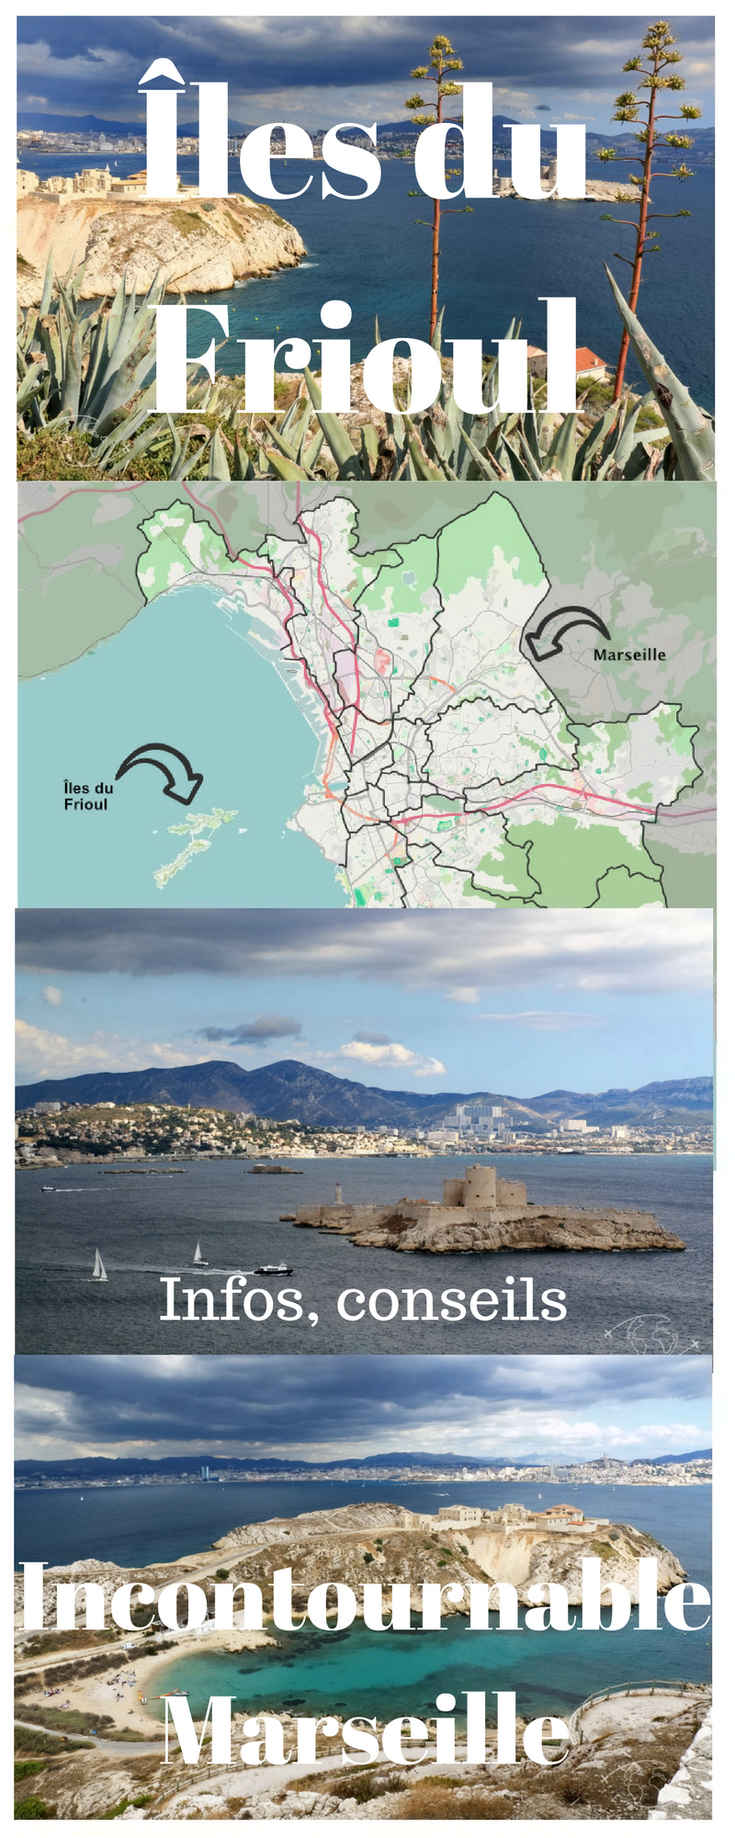 Îles du Frioul : une visite incontournable à faire sur Marseille